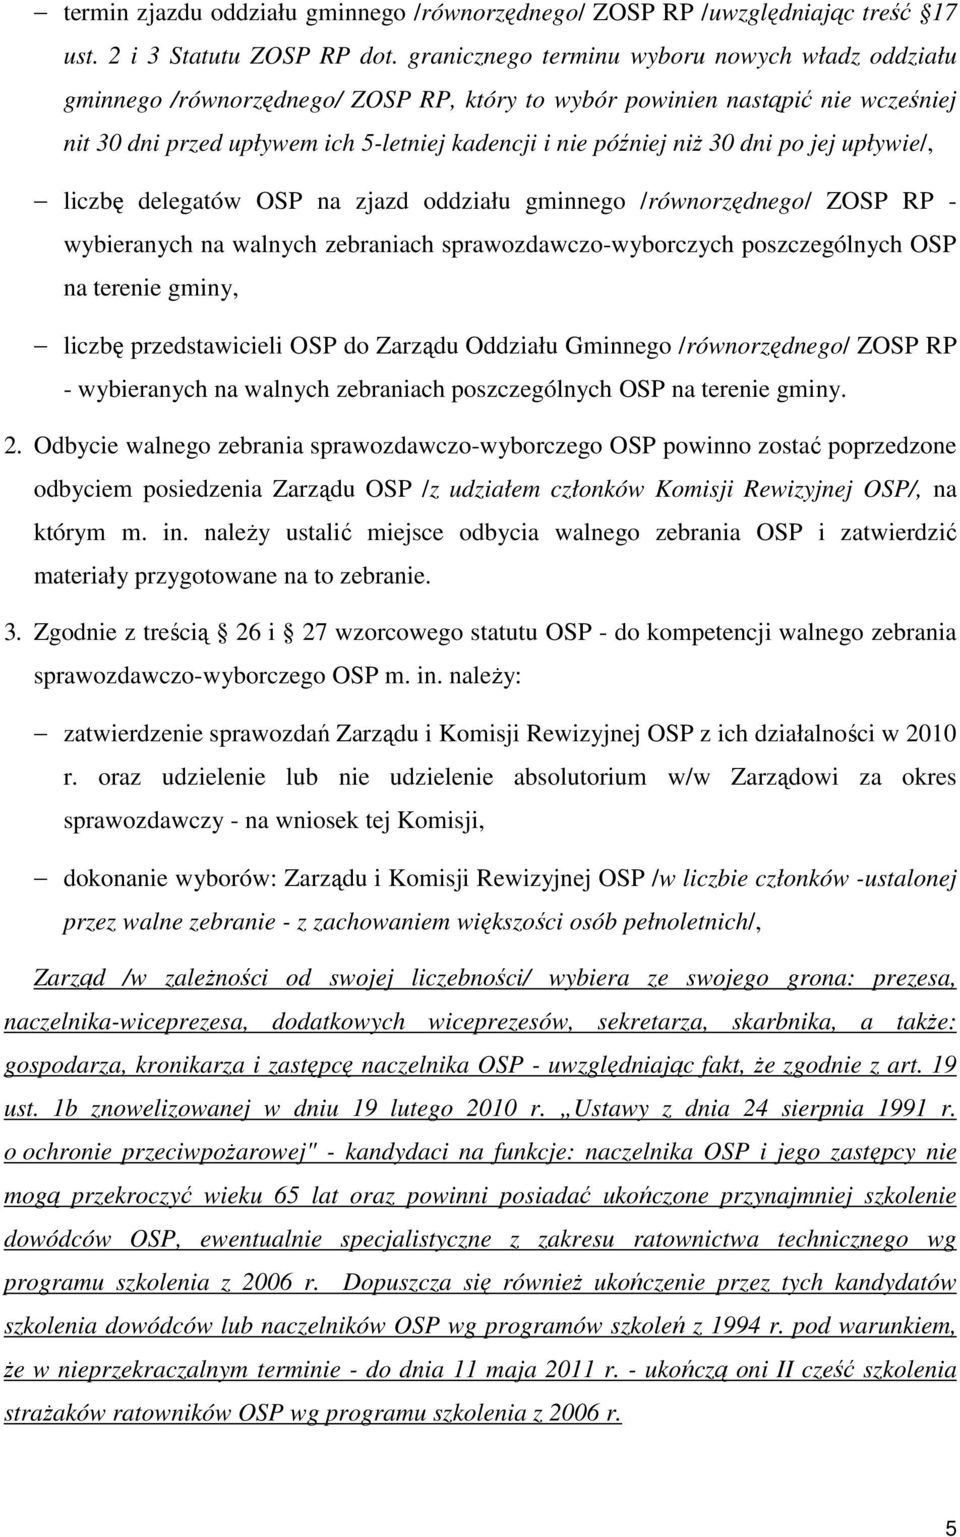 dni po jej upływie/, liczbę delegatów OSP na zjazd oddziału gminnego /równorzędnego/ ZOSP RP - wybieranych na walnych zebraniach sprawozdawczo-wyborczych poszczególnych OSP na terenie gminy, liczbę